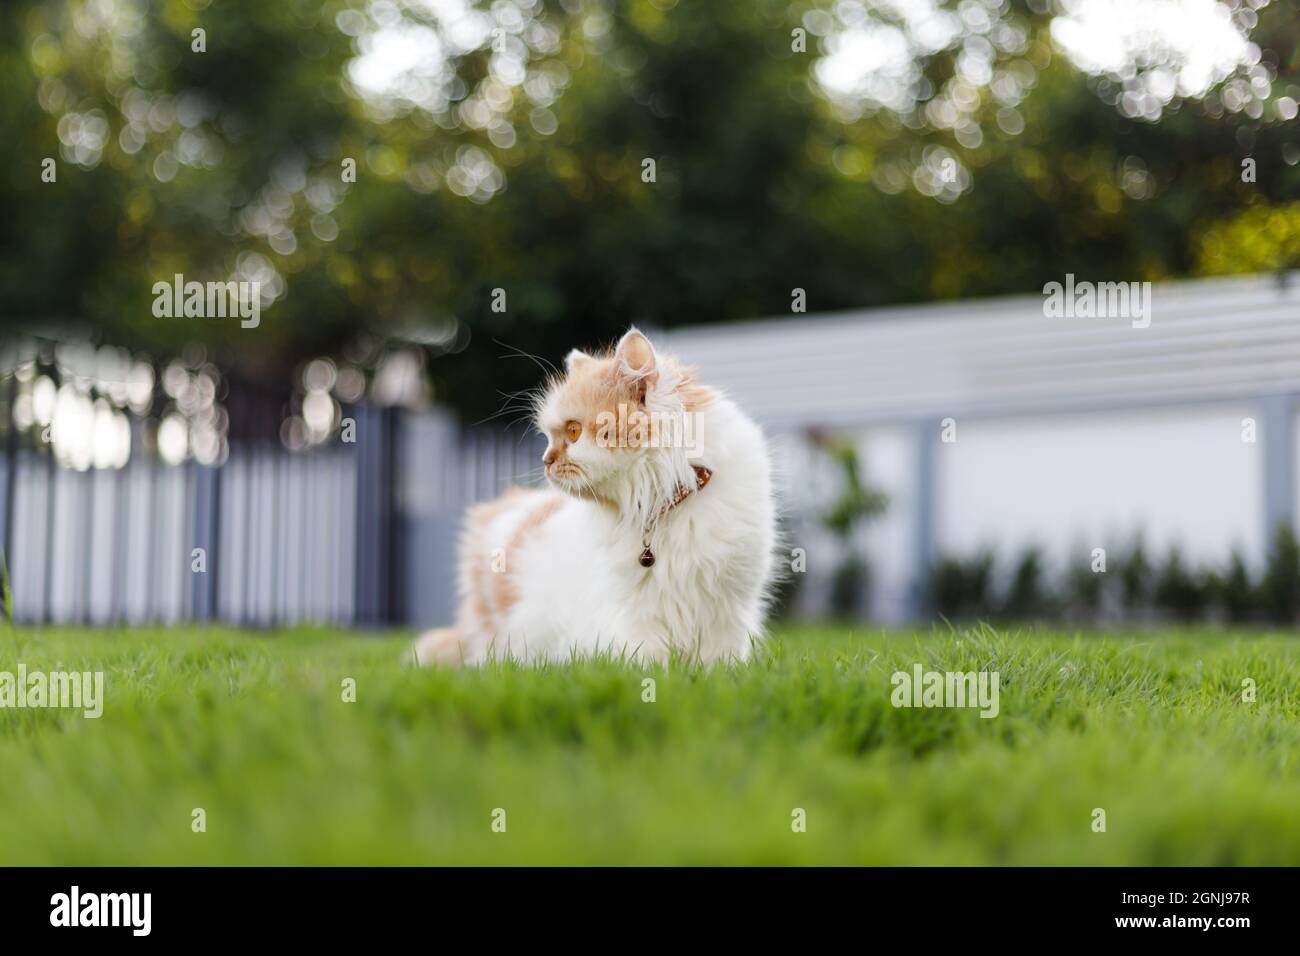 Die niedliche persische Katze sitzt auf dem grünen Gras Feld, und suchen etwas, selektive Fokus flache Tiefe des Feldes Stockfoto